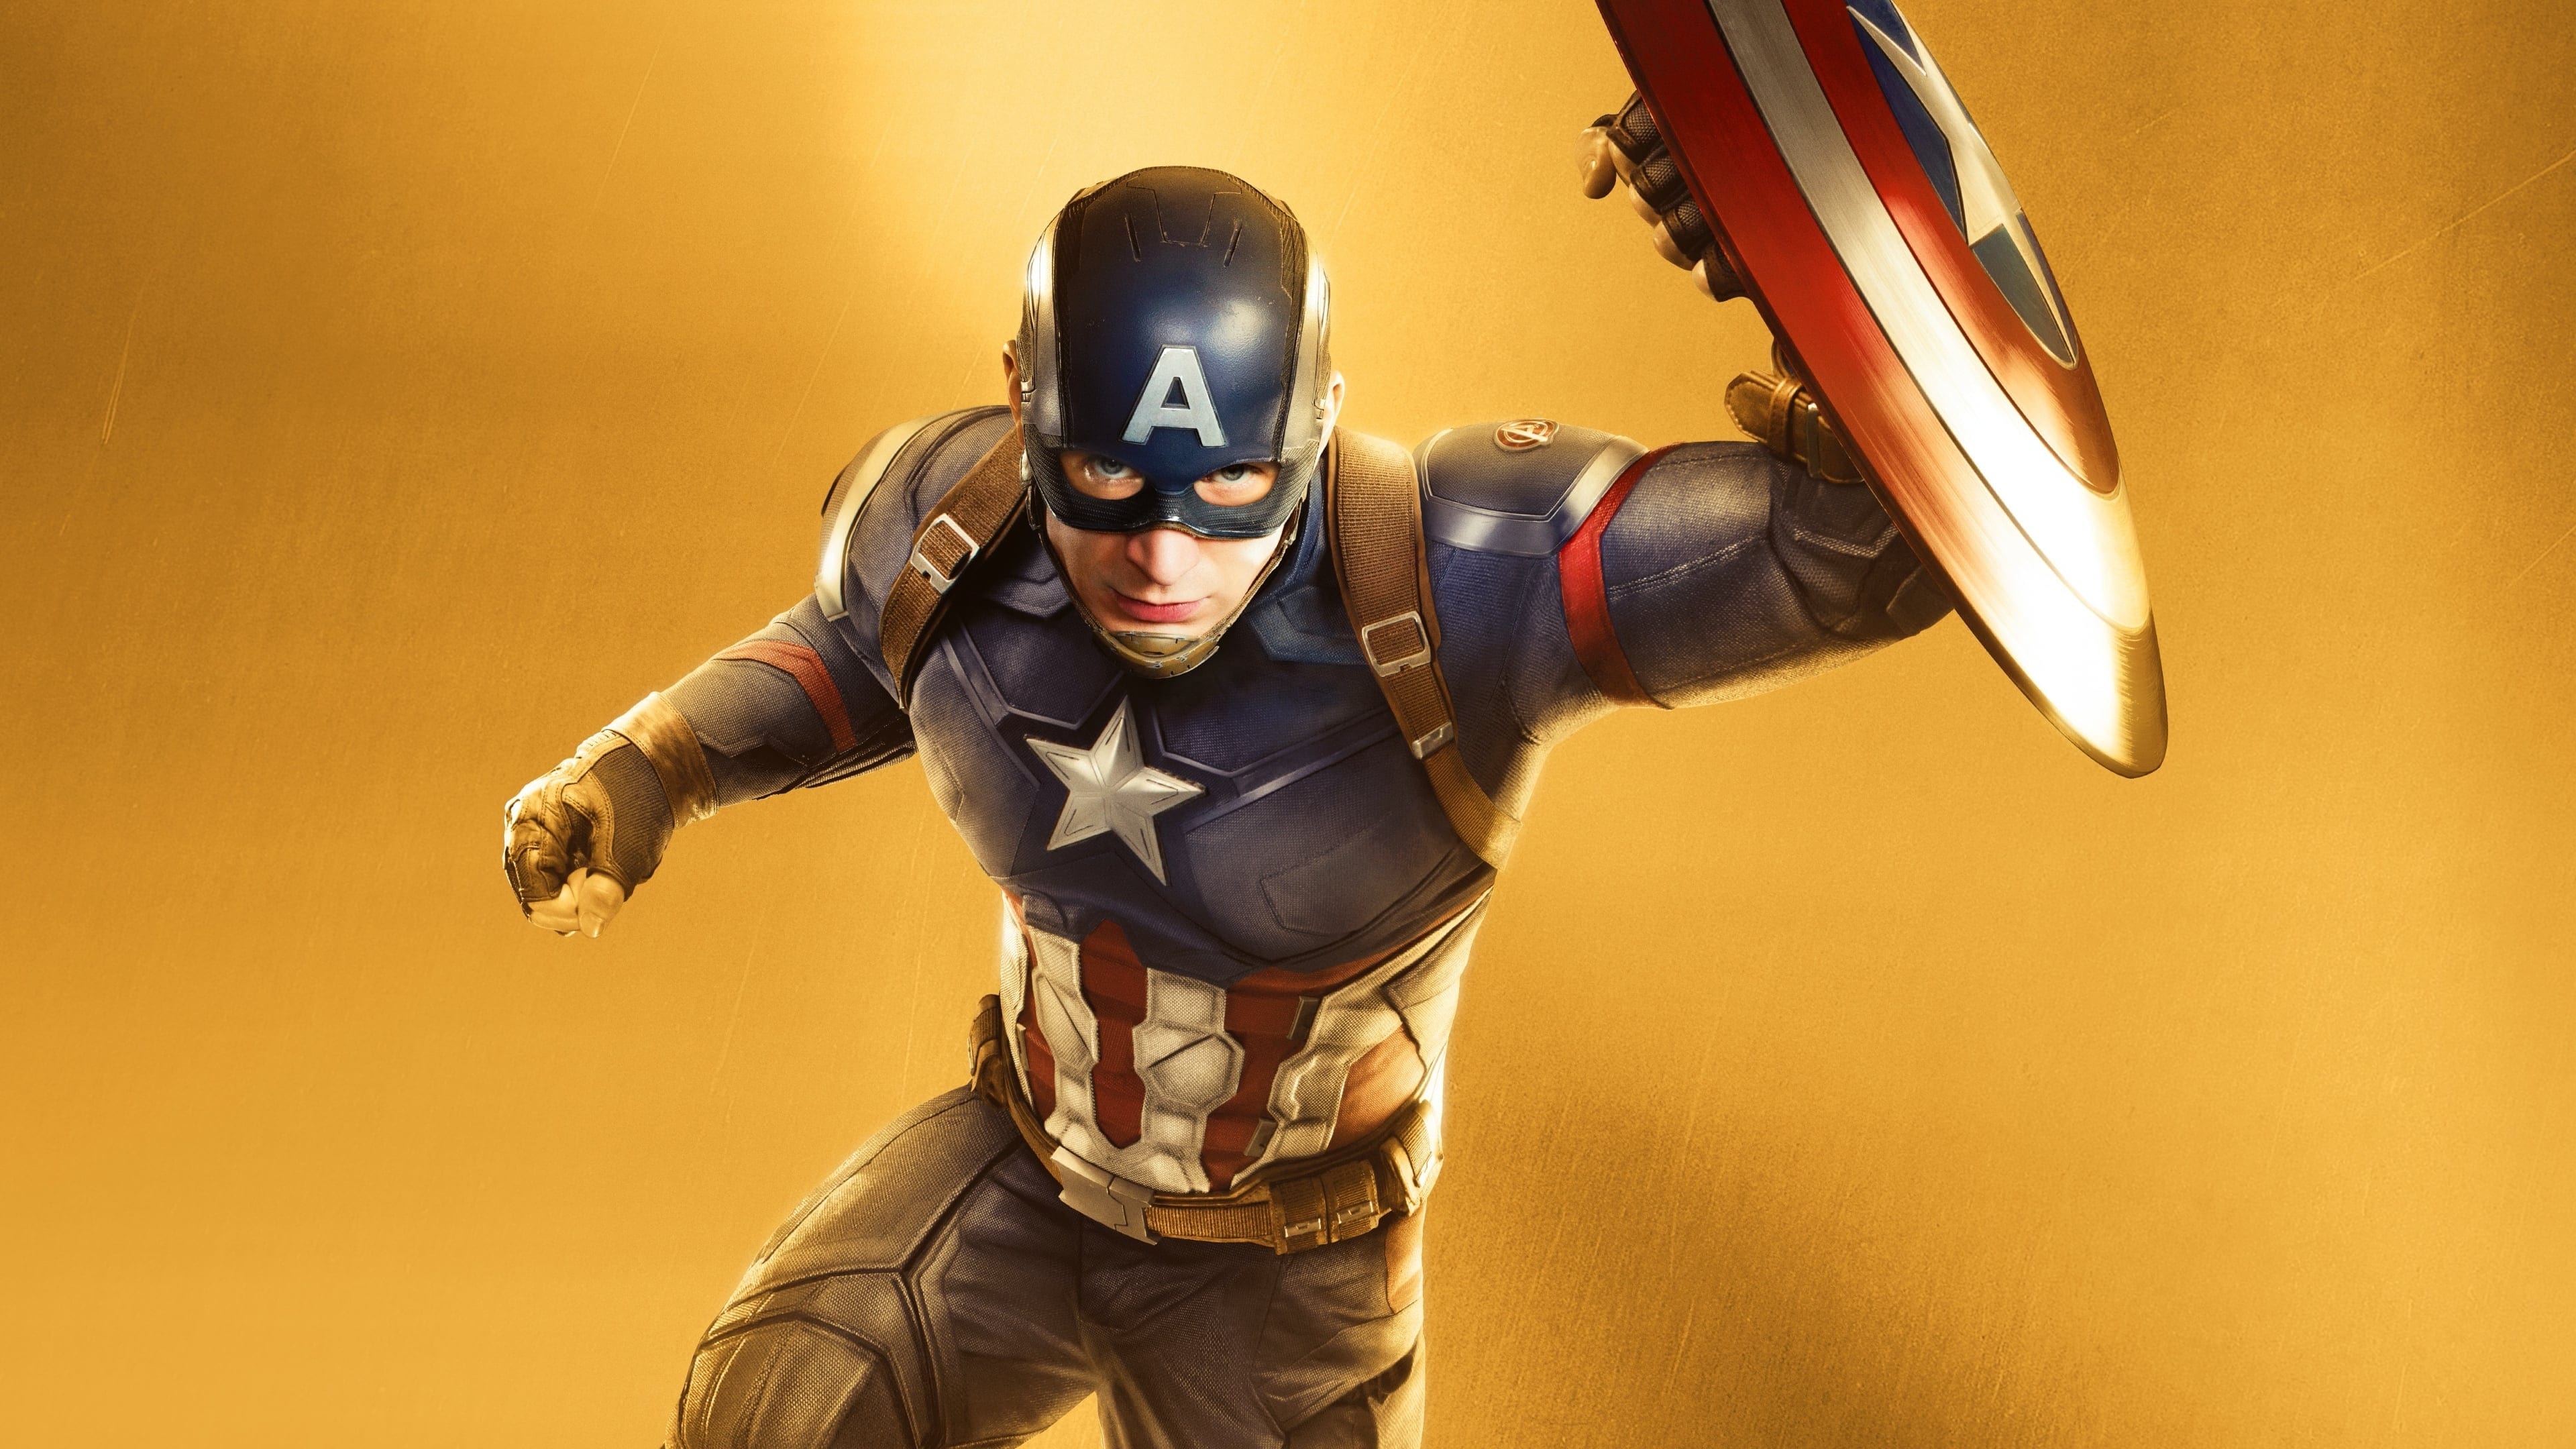 Kapitan Ameryka: Wojna bohaterów (2016)